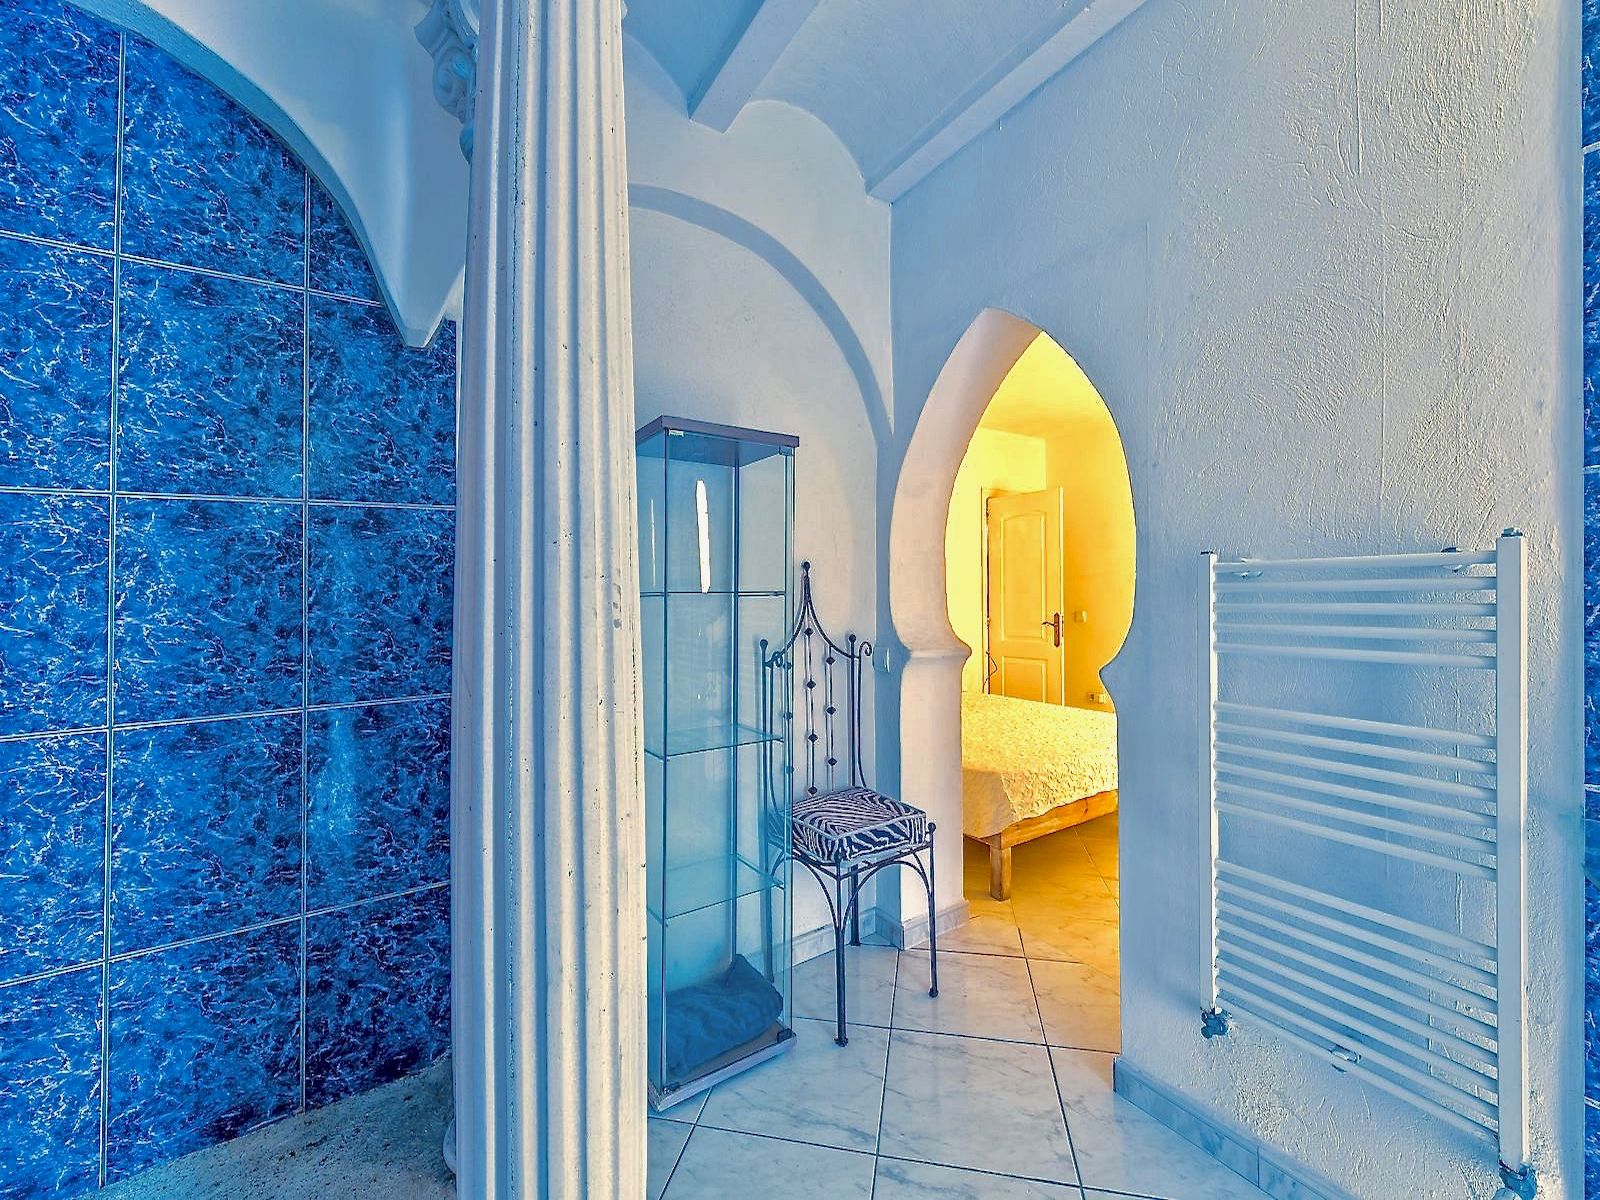 Villa de lujo estilo arabe a la venta en Ibiza con Vista al Mar